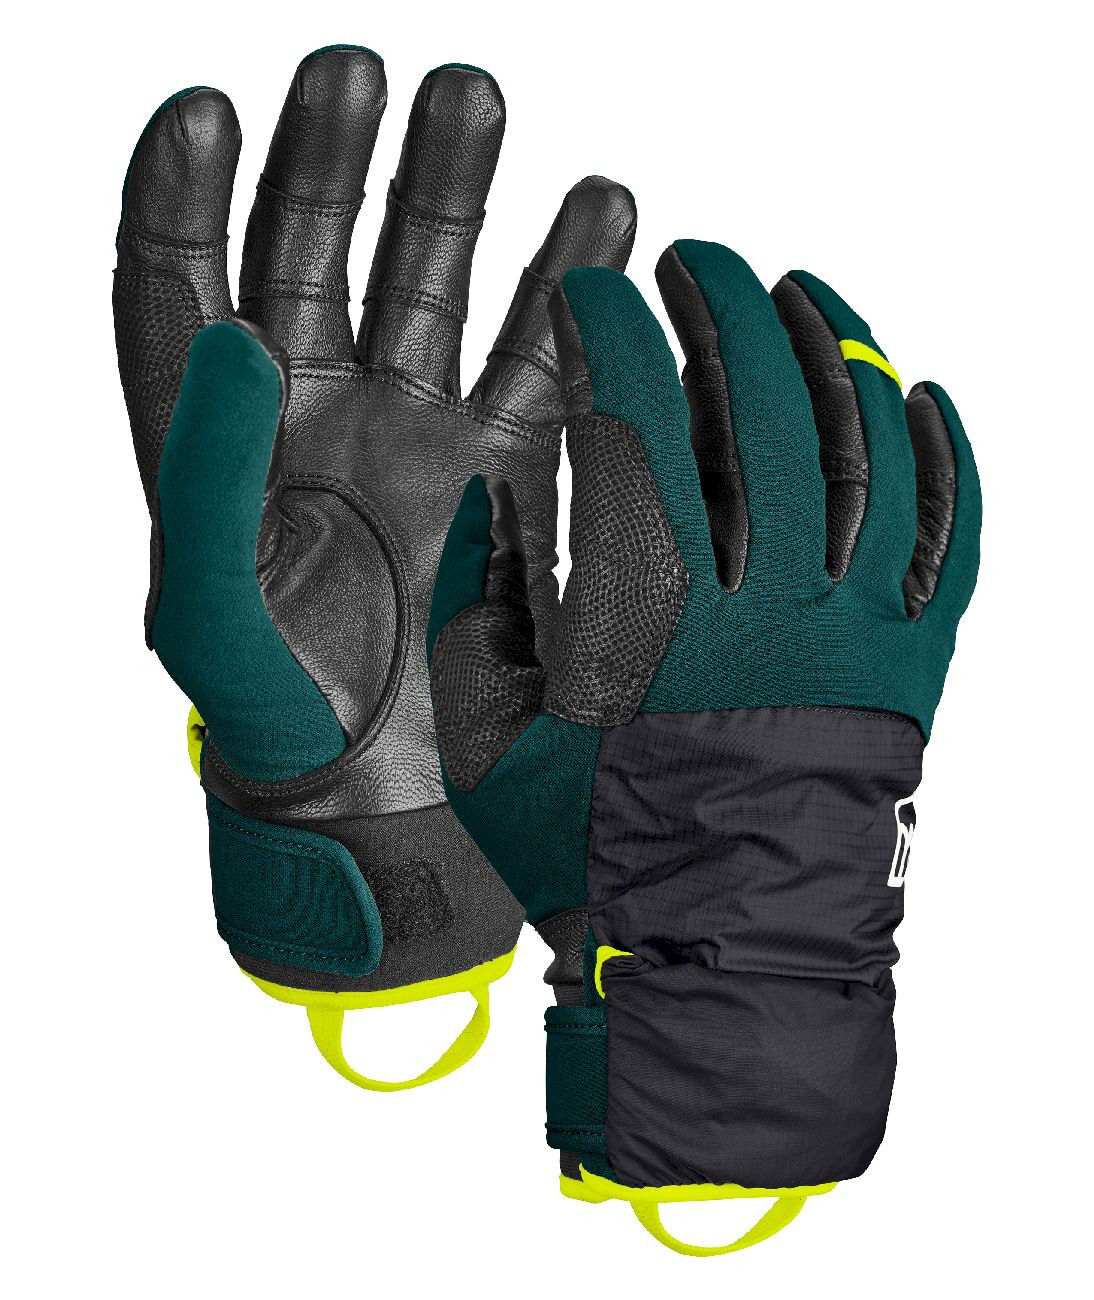 Ortovox Tour Pro Cover Glove - Guanti da sci - Uomo